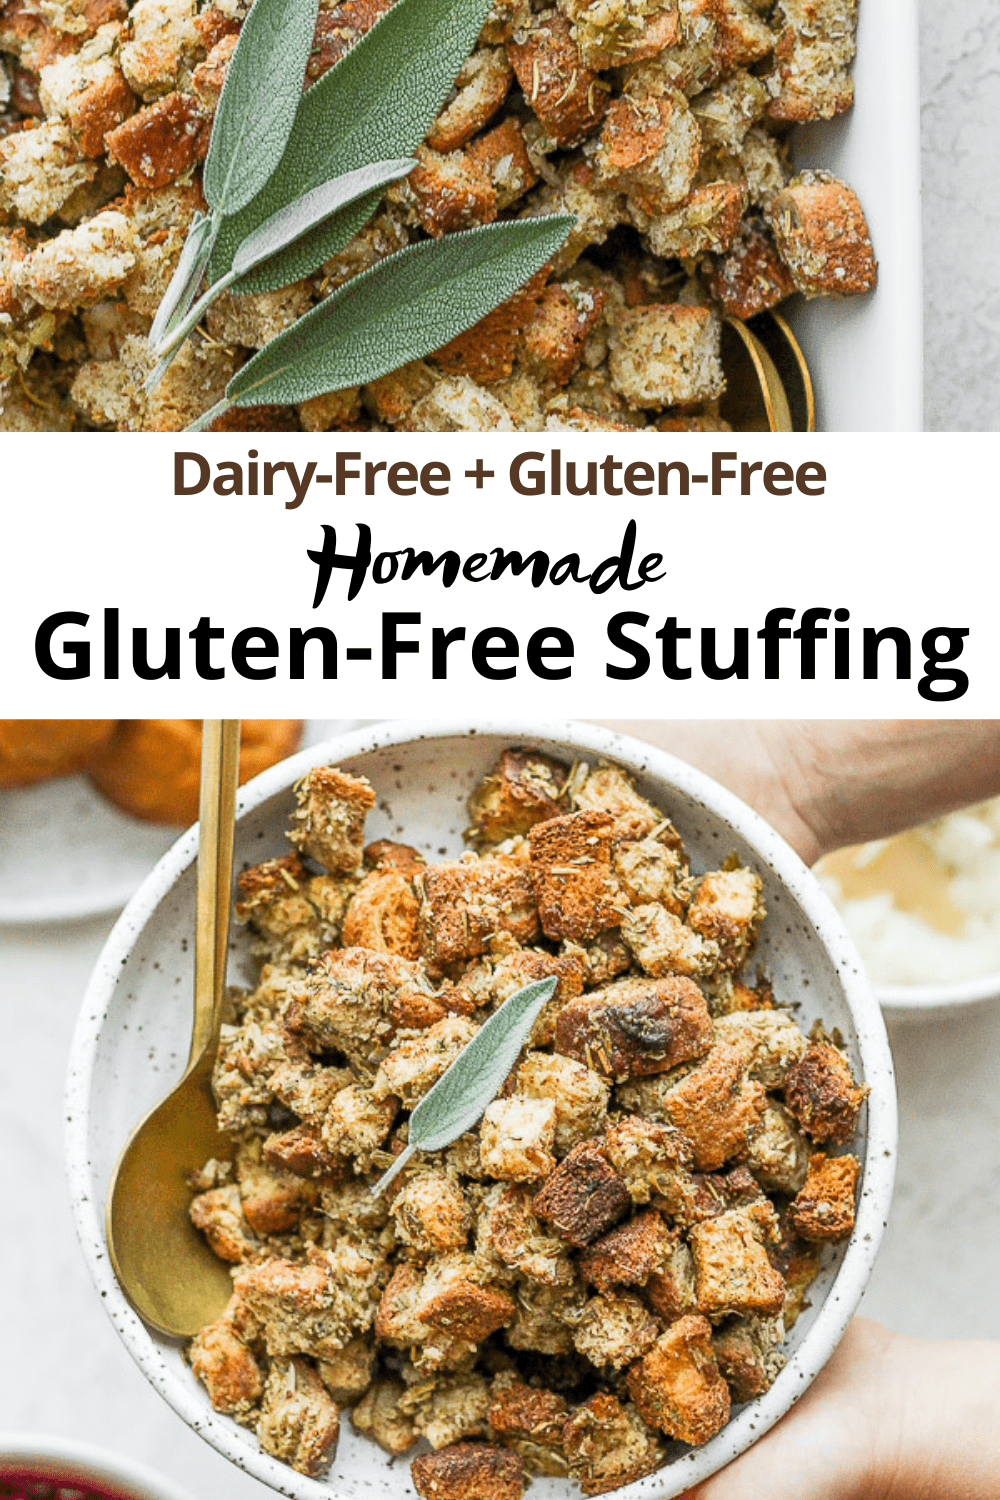 Pinterest imge for gluten free stuffing.